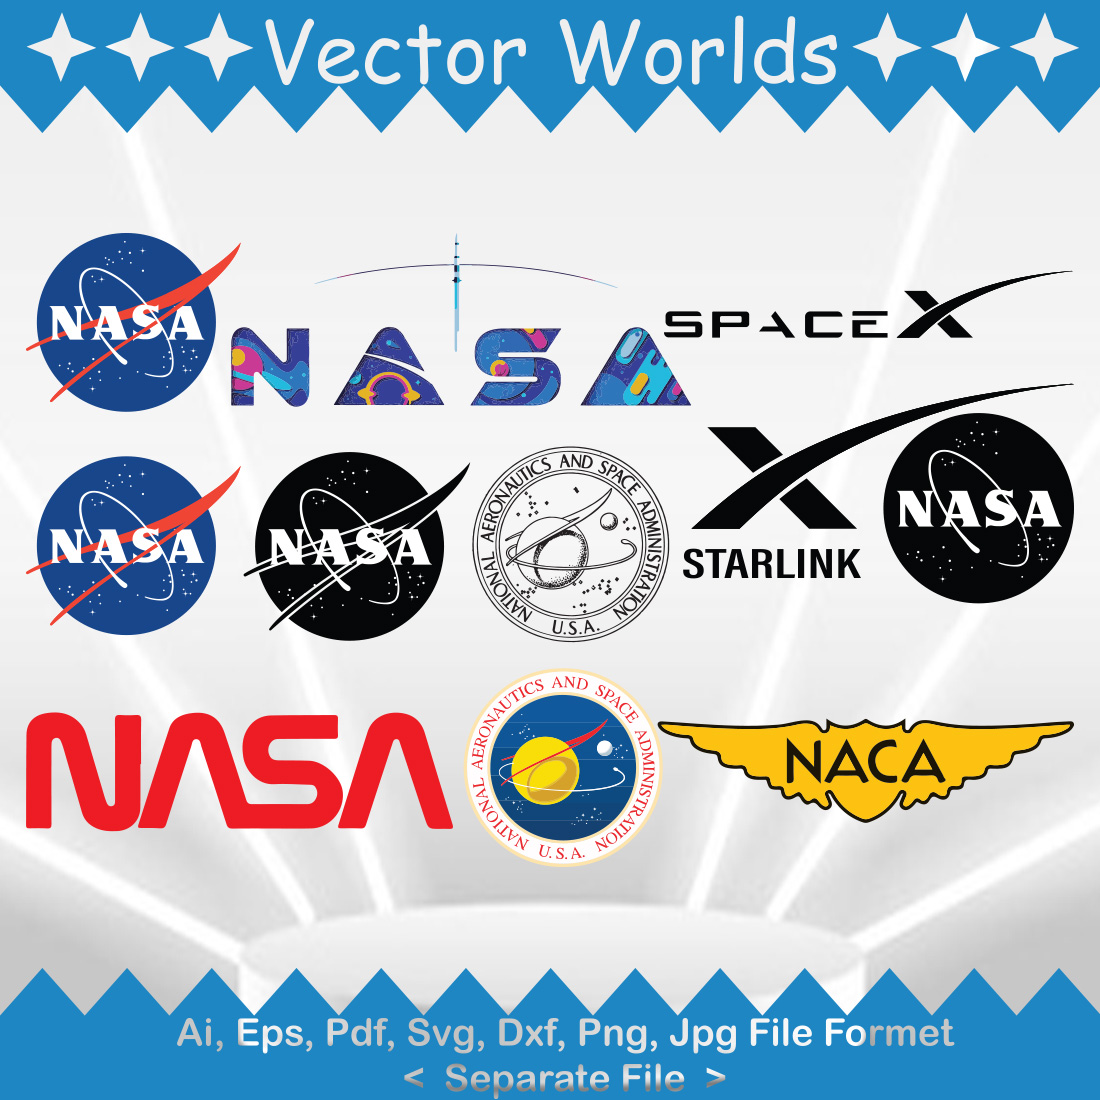 NASA Logo SVG Vector Design cover image.